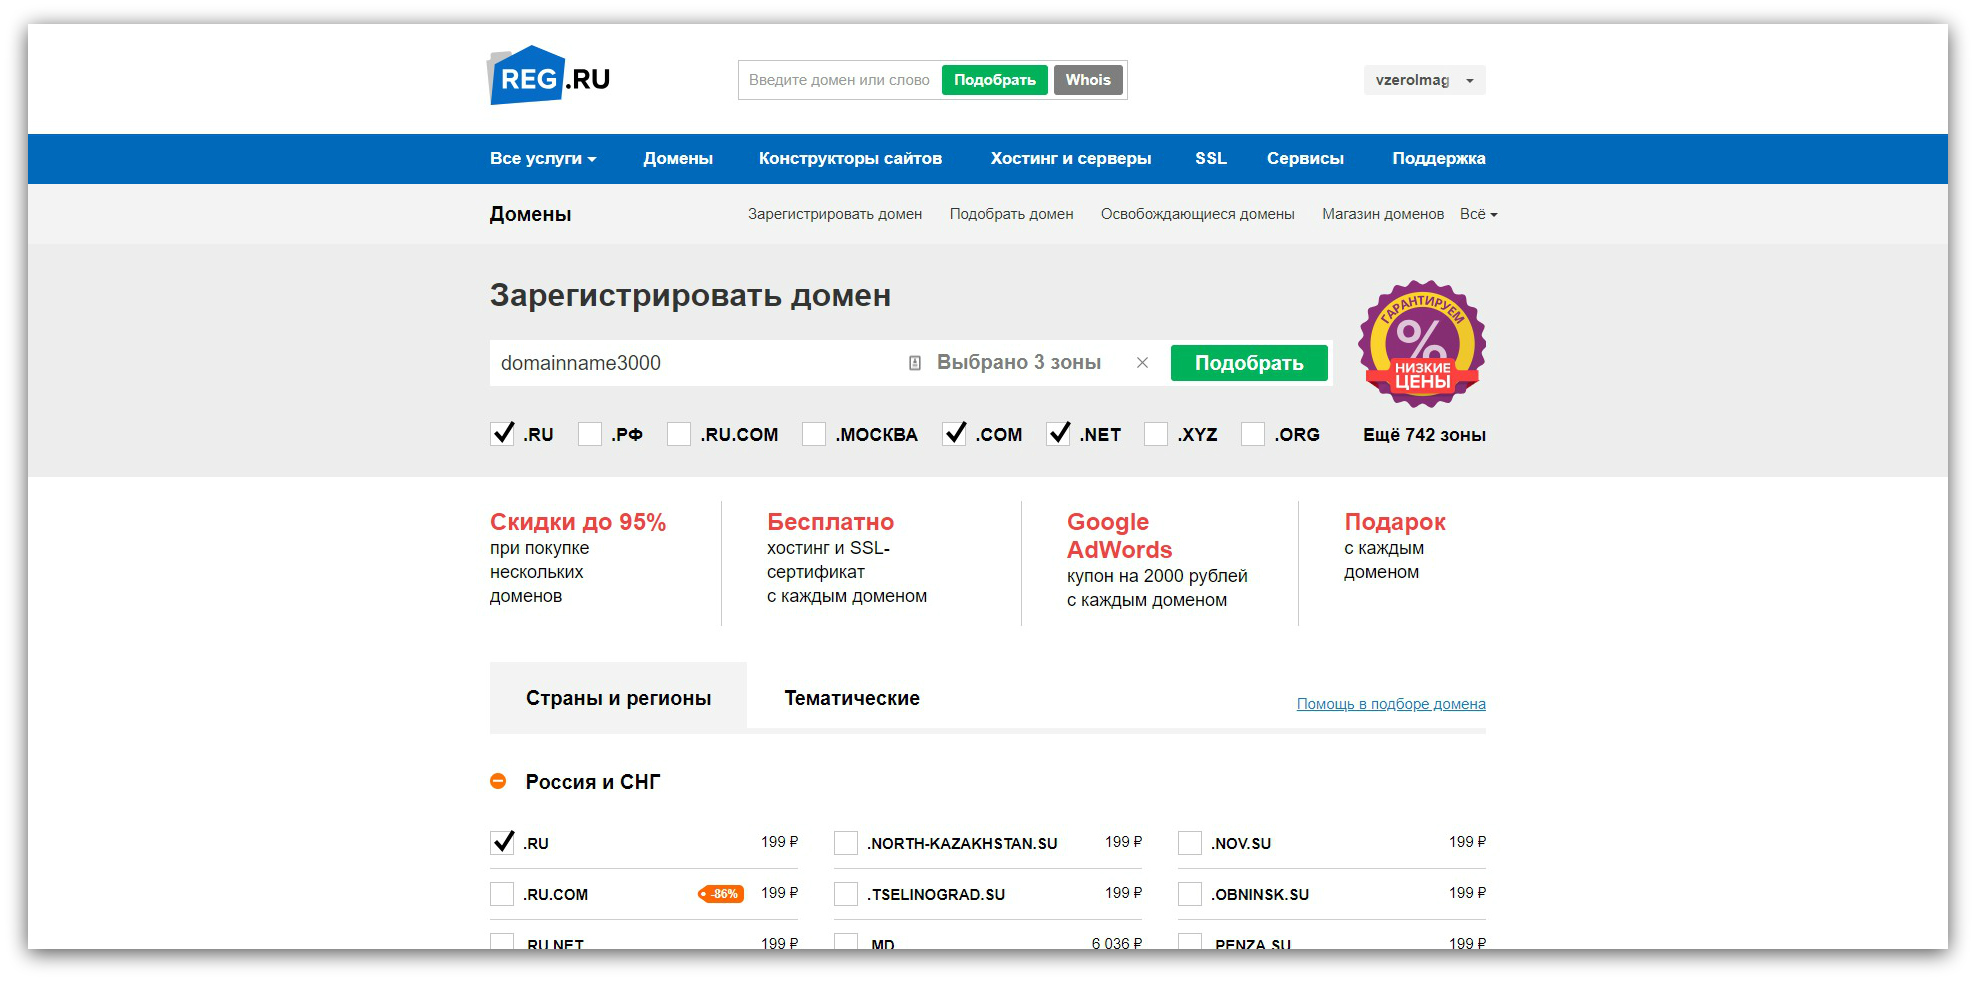 N ru reg. Зарегистрировать домен. Регистратор доменов. Магазин доменов РФ. Как зарегистрировать домен.